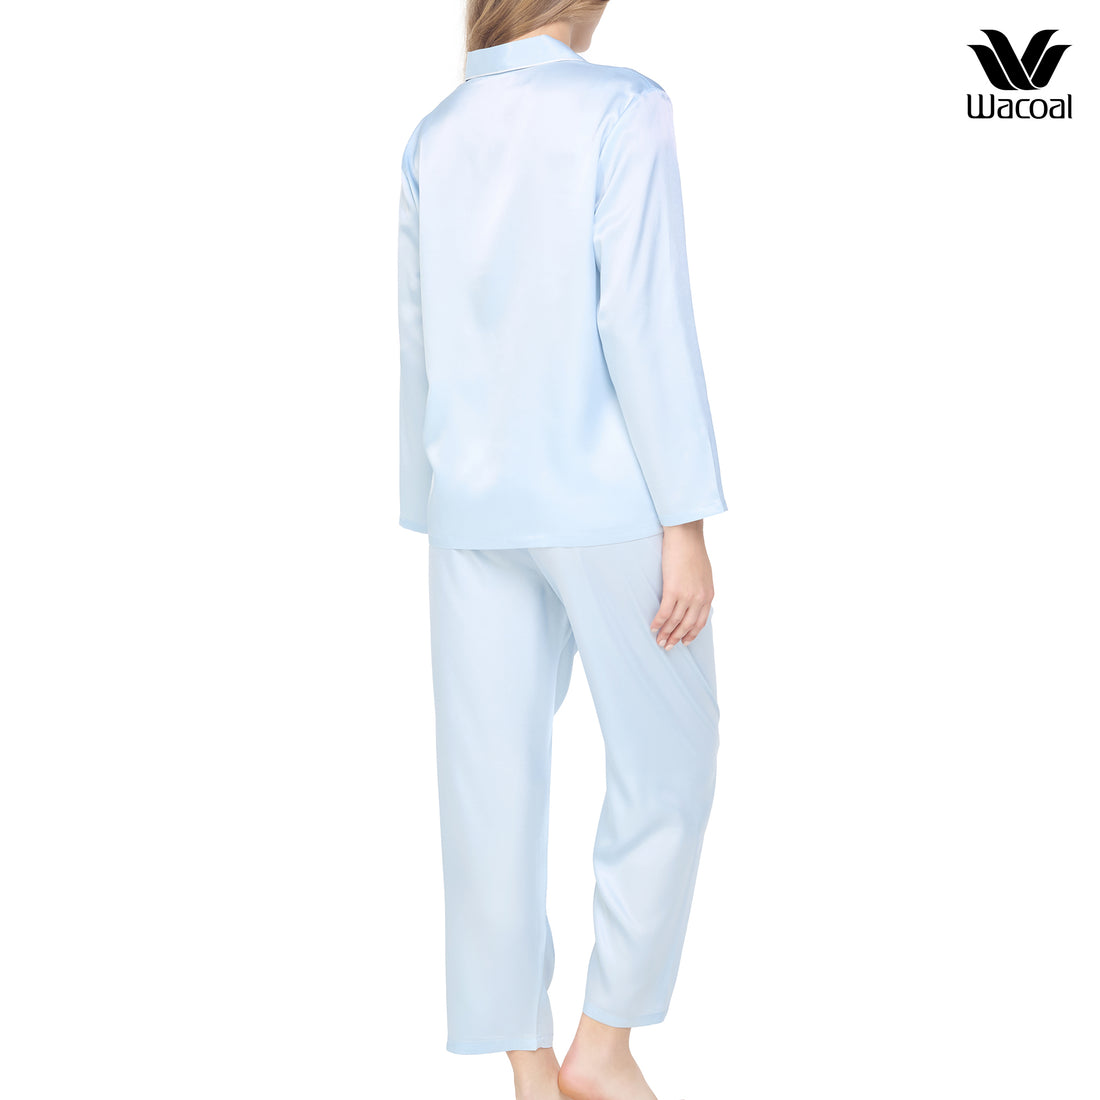 Wacoal Sleep Wear ชุดนอนผ้า Satin Set แขนยาว ขายาว รุ่น WN7E19 สีฟ้าคราม (SM)